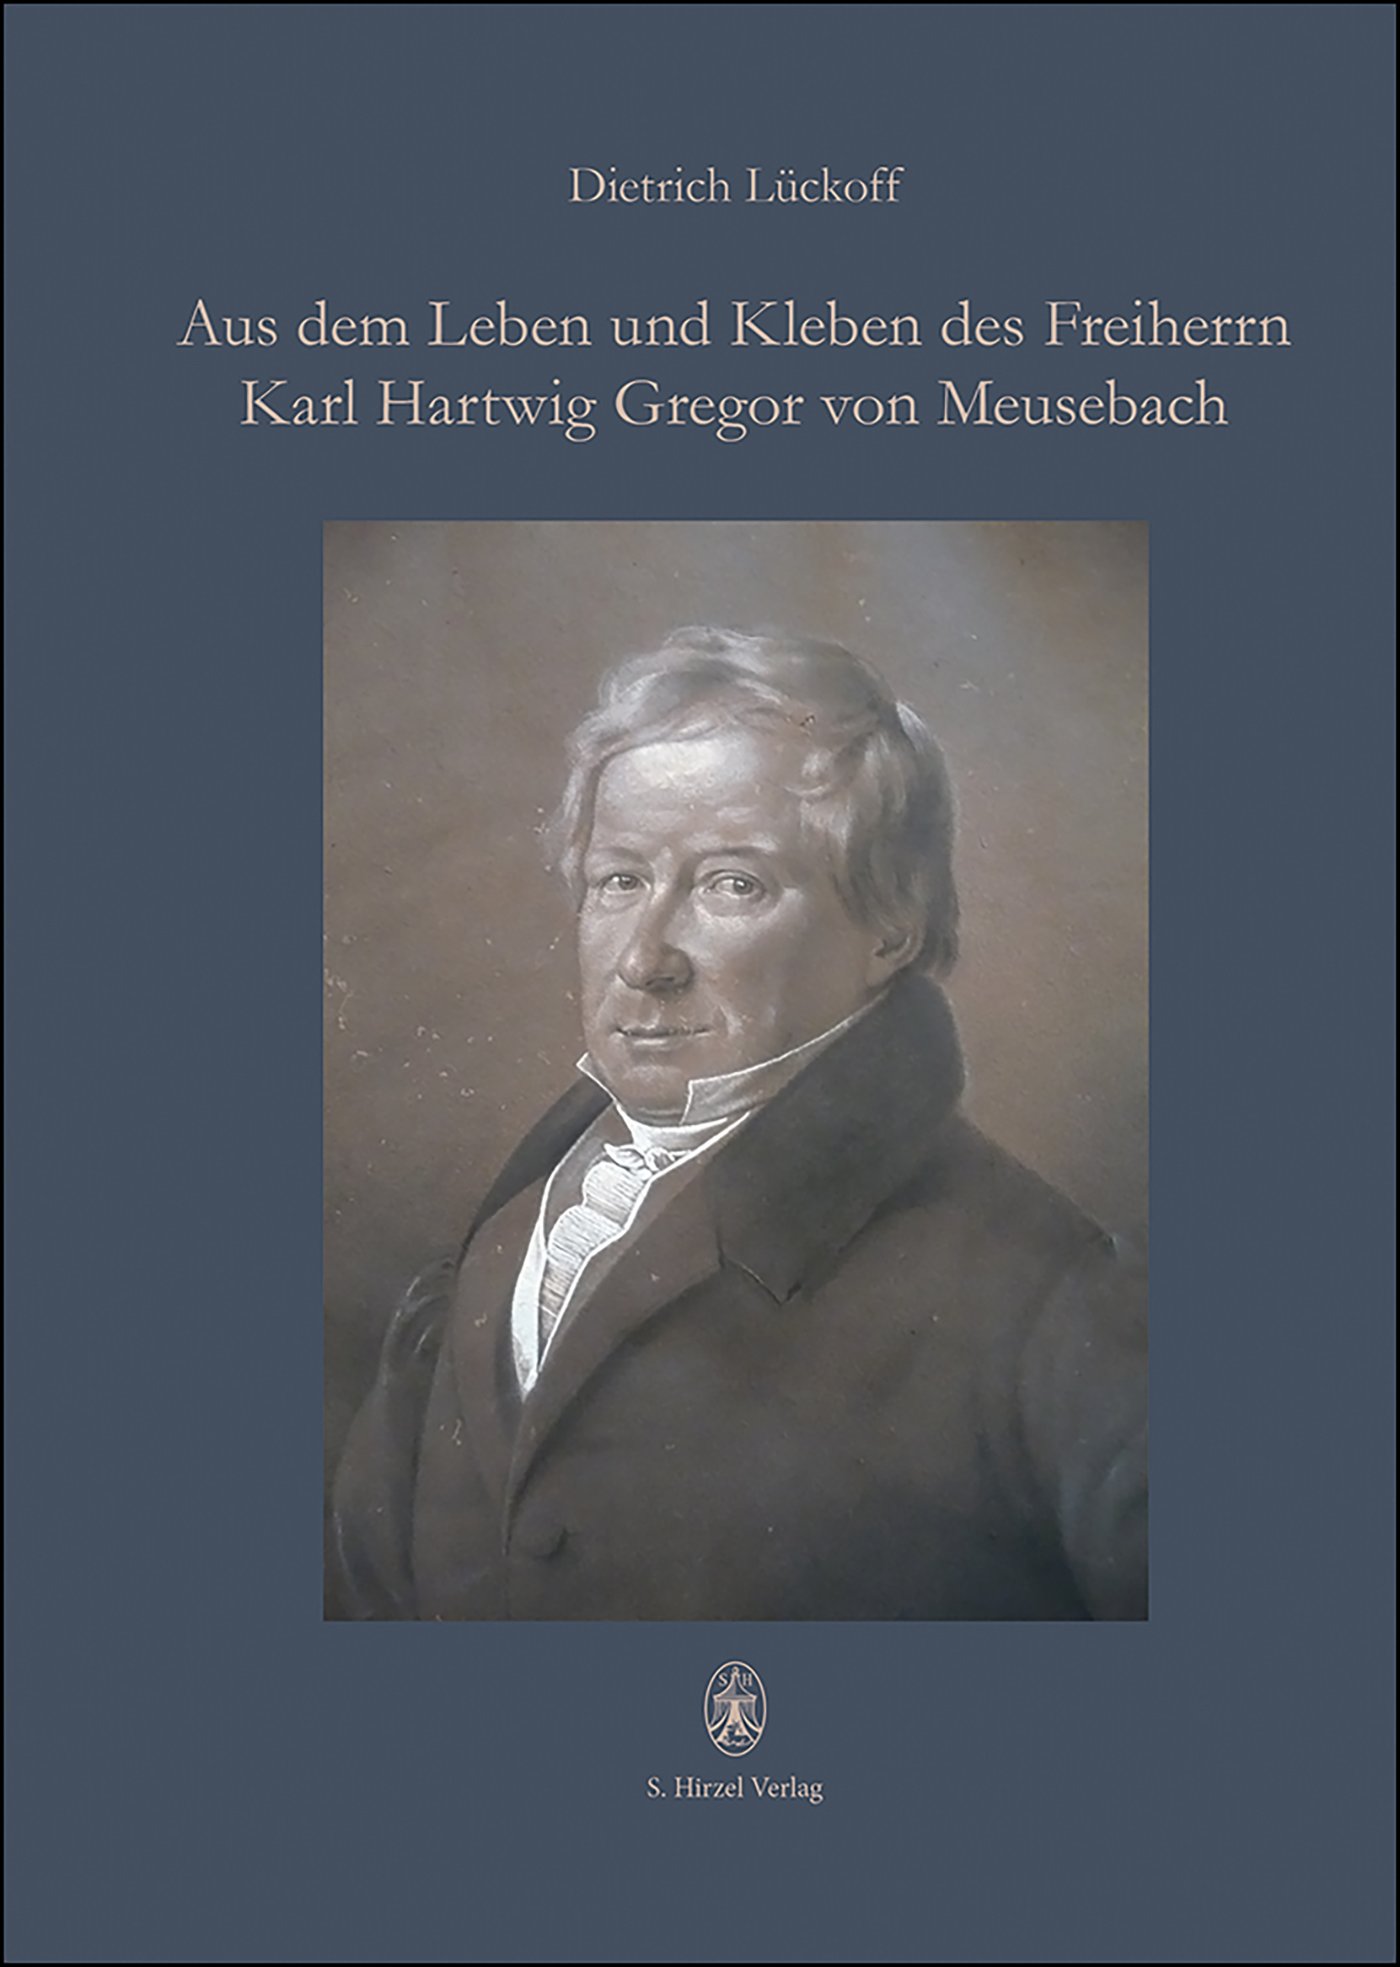 Aus dem Leben und Kleben des Freiherrn Karl Hartwig Gregor von Meusebach